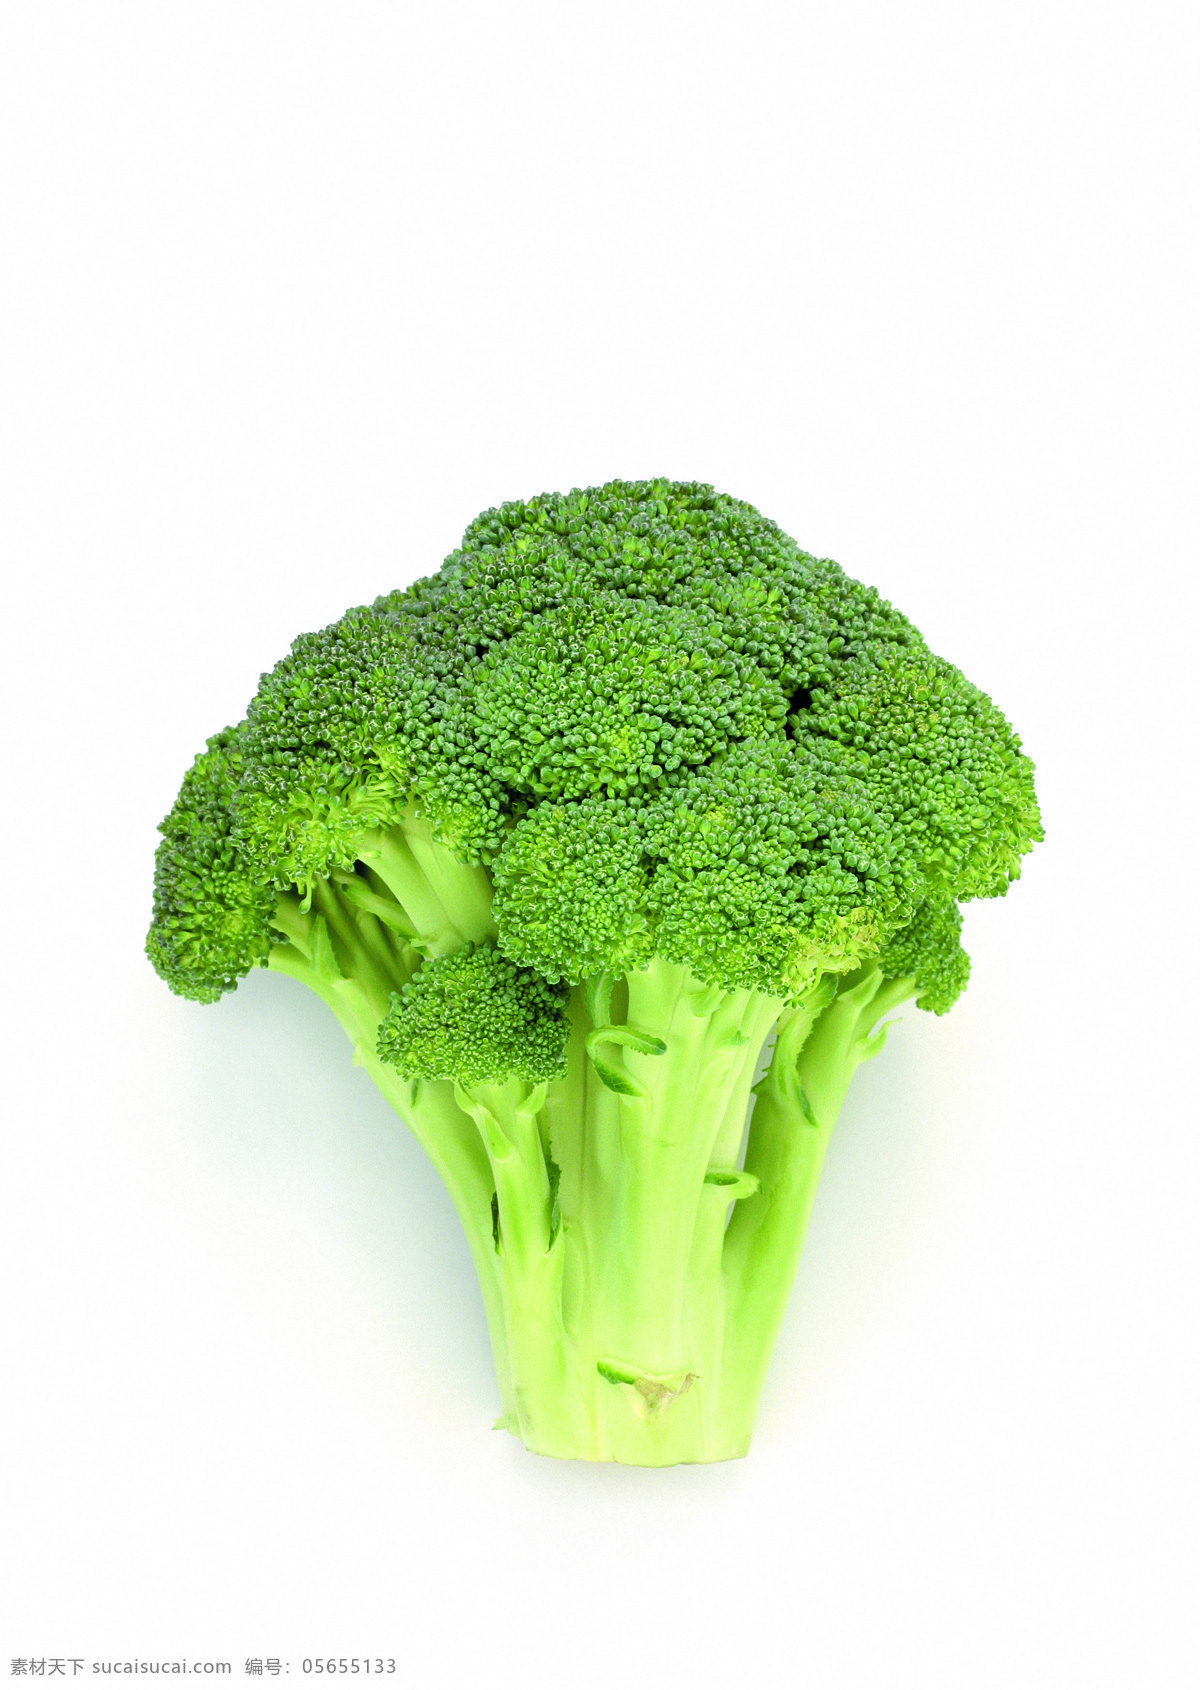 新鲜花椰菜 花椰菜 单颗 鲜绿 食材 高质量 清晰 生物世界 蔬菜 摄影图库